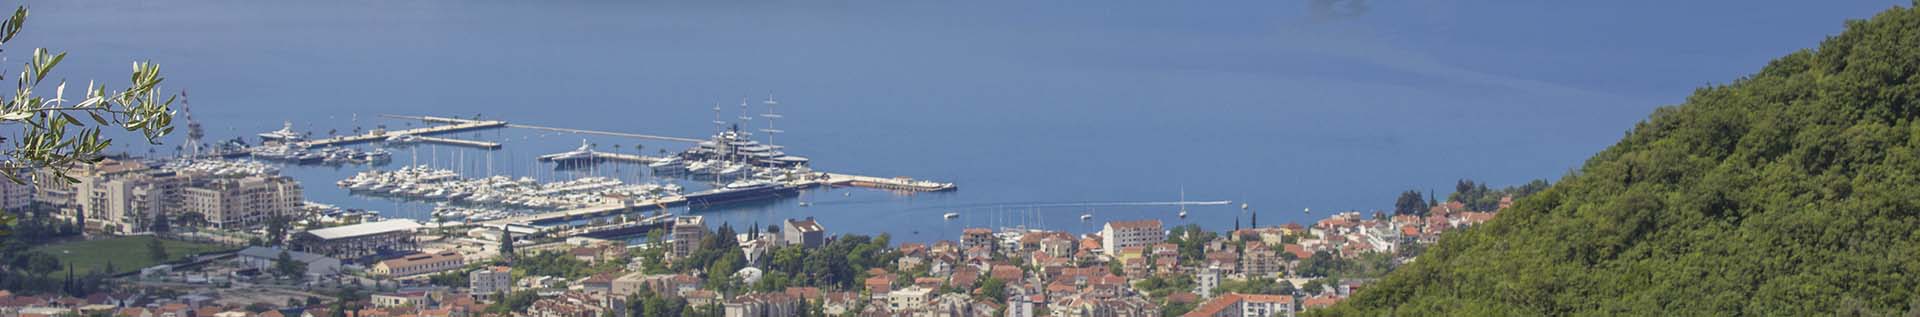 Panoramic view of Porto Montenegro marina from Gornja Lastva village.